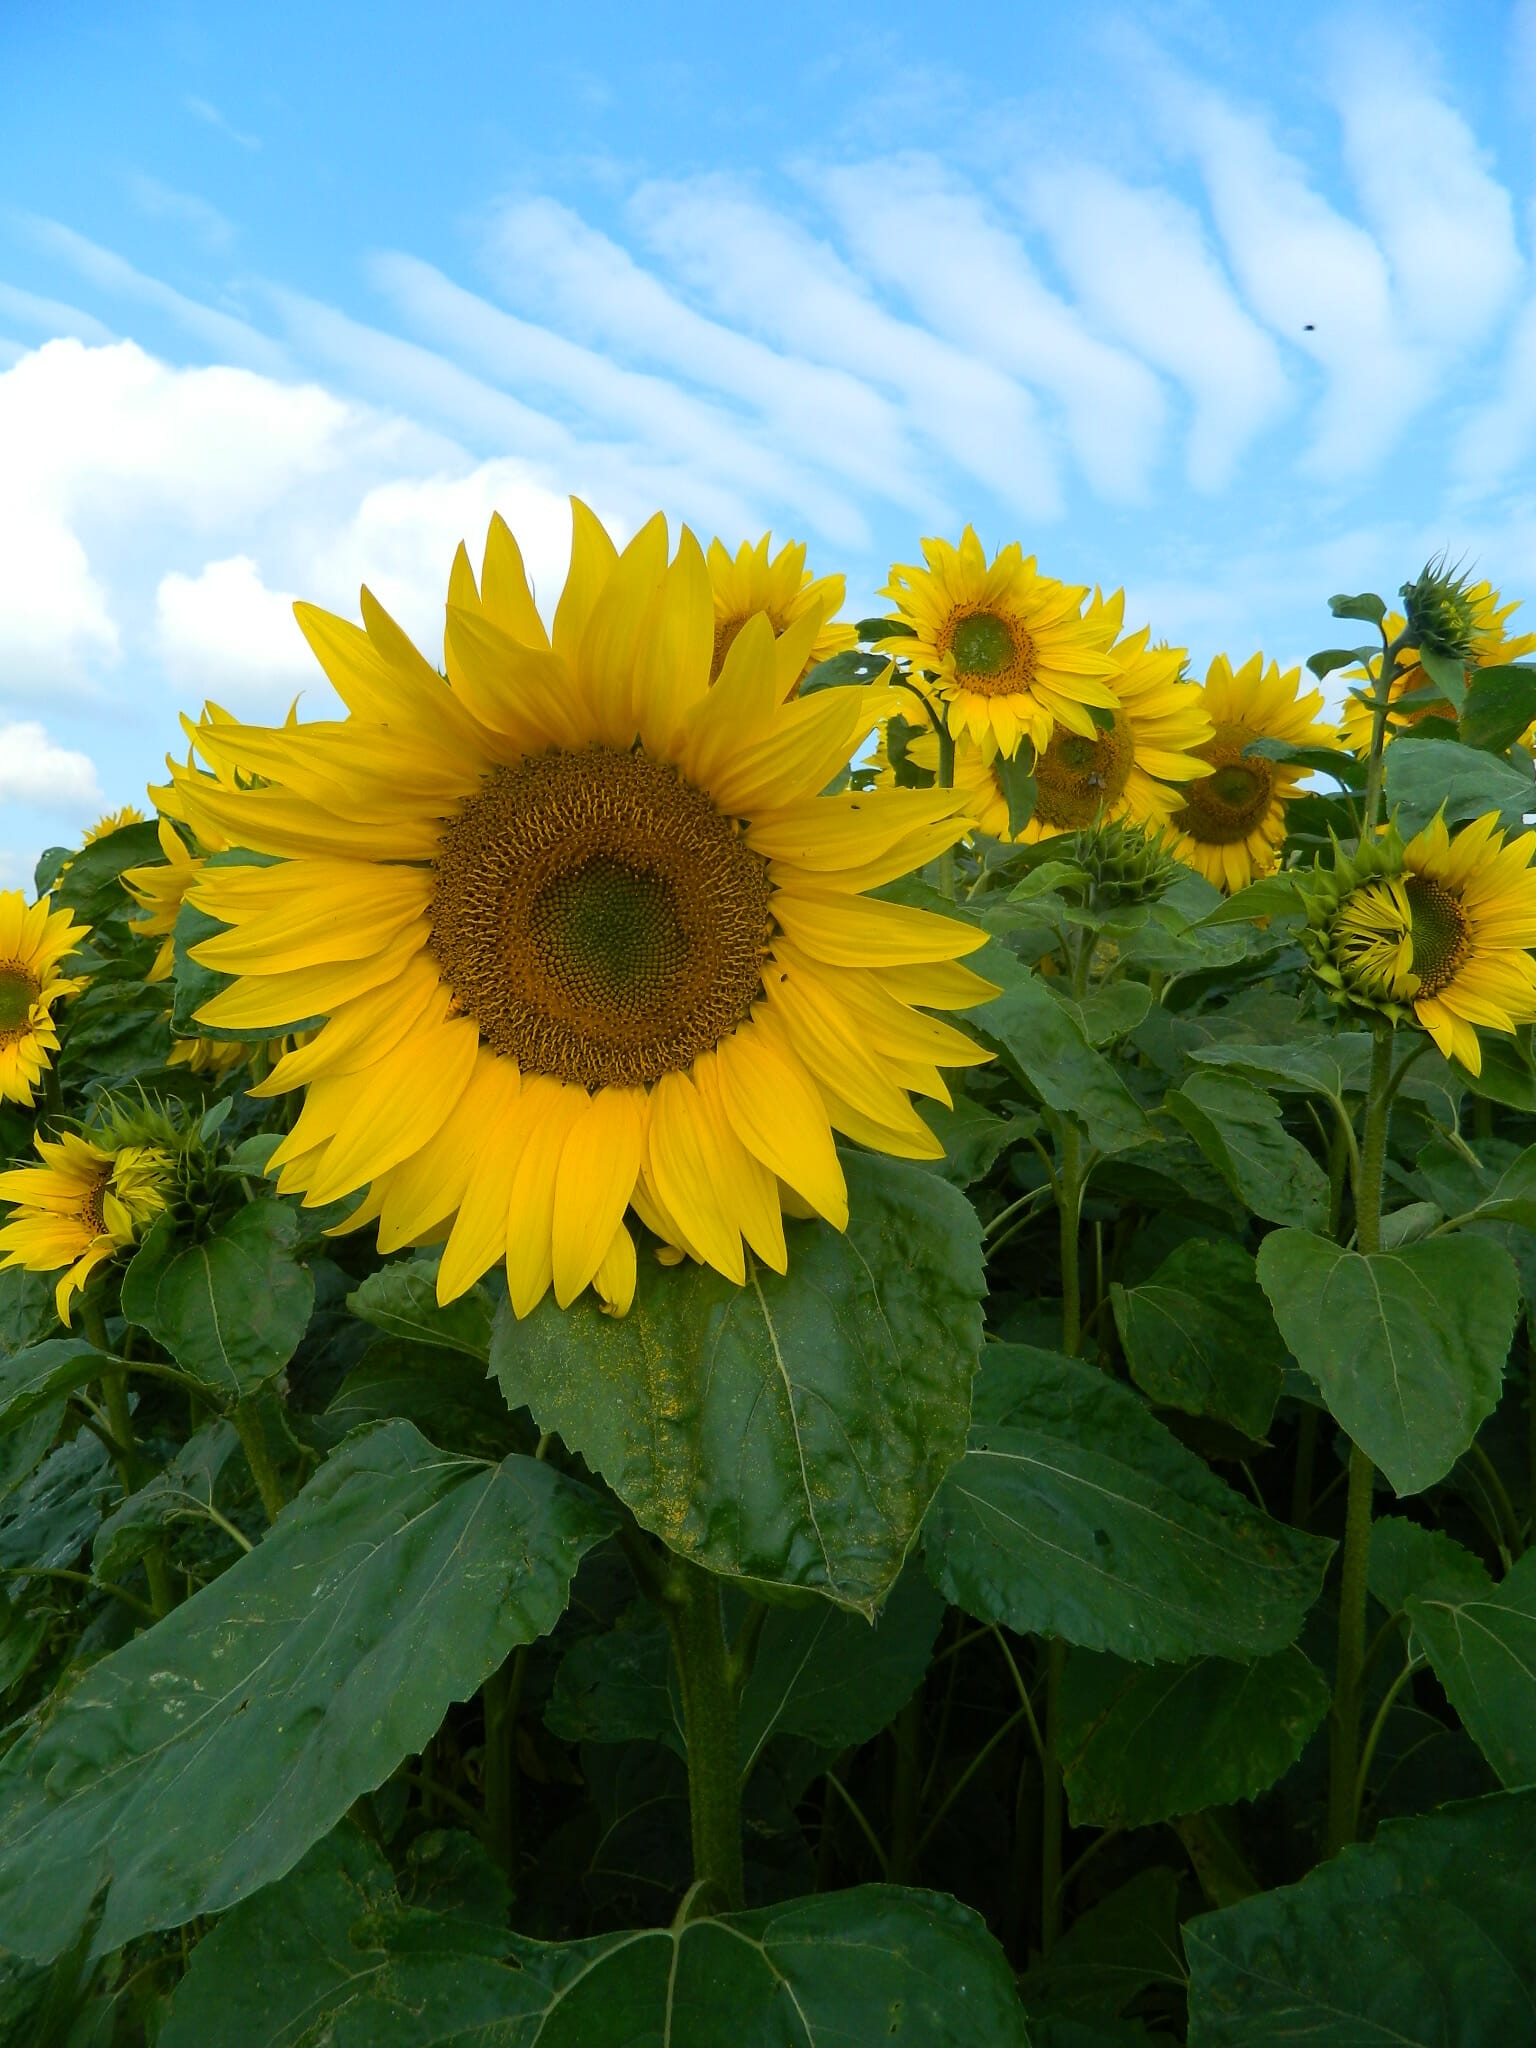 Sunspot sunflower